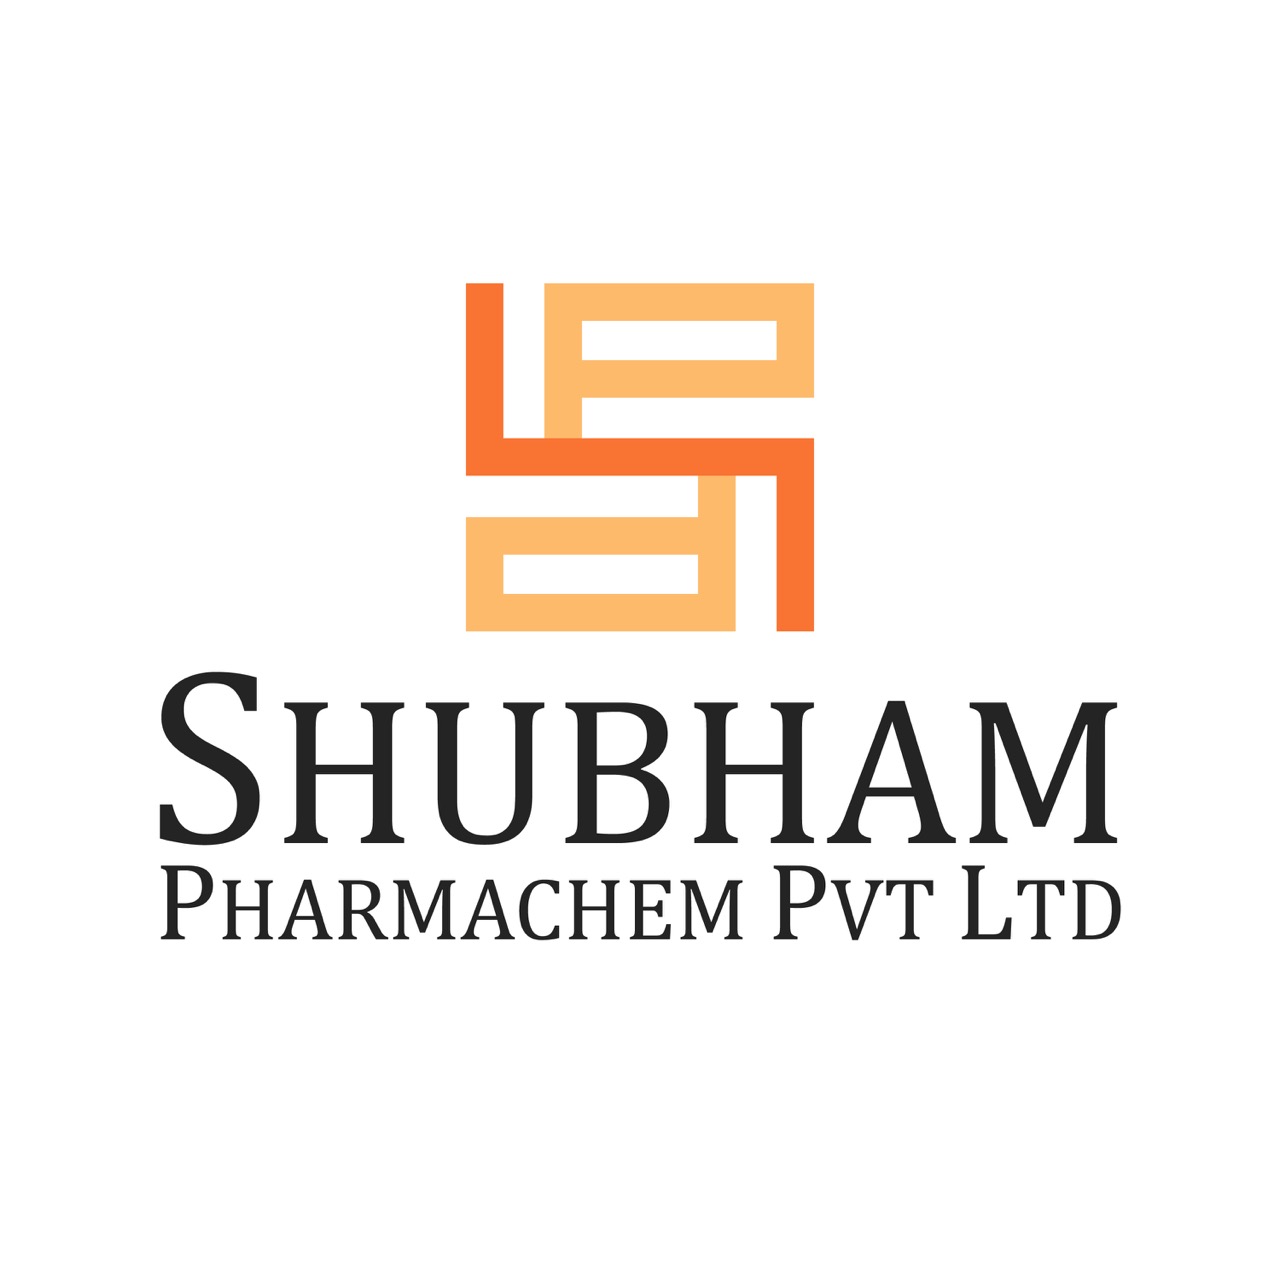 Shubham Pharmachem Pvt. Ltd.